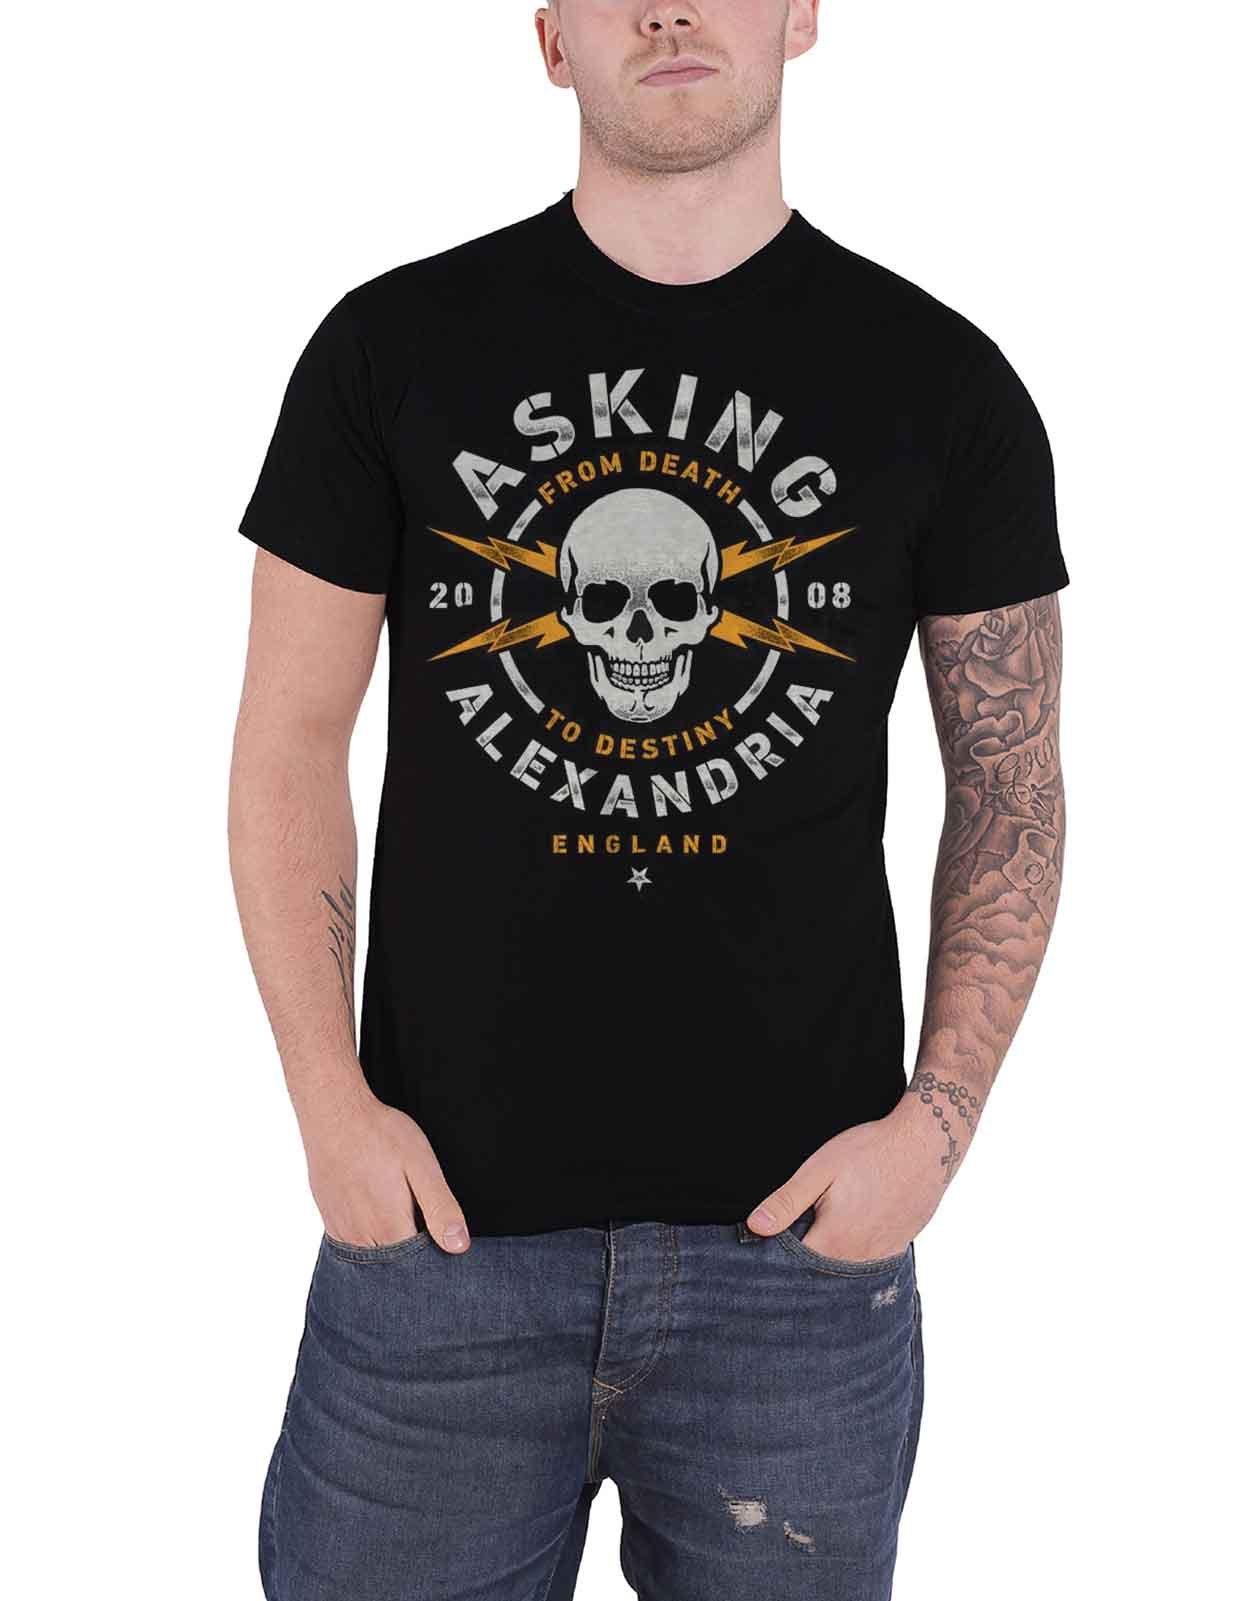 Опасная футболка Asking Alexandria, черный пазл картонный 29x20 см музыка asking alexandria 18447